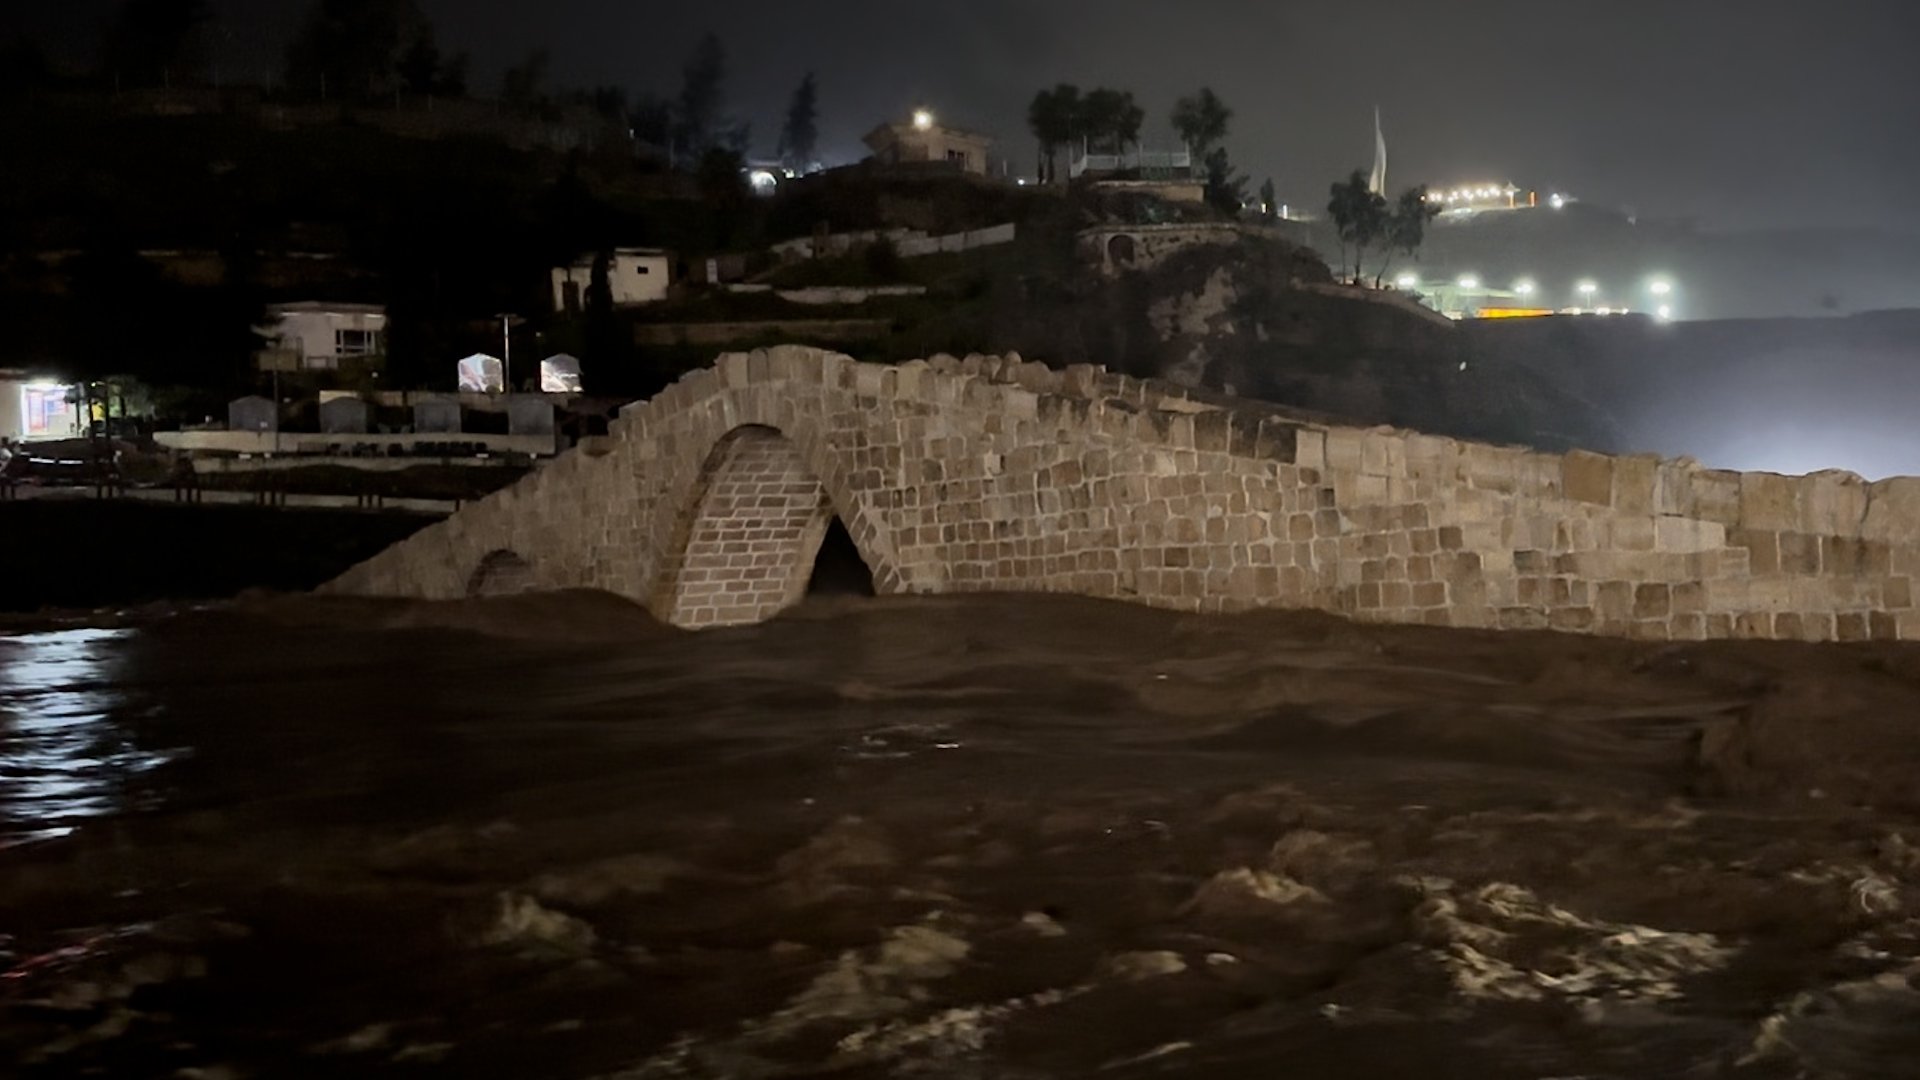 فيديو: جسر زاخو الشهير يكاد أن يغرق بالسيول والمياه تغمر الأعمدة الحجرية الشاهقة